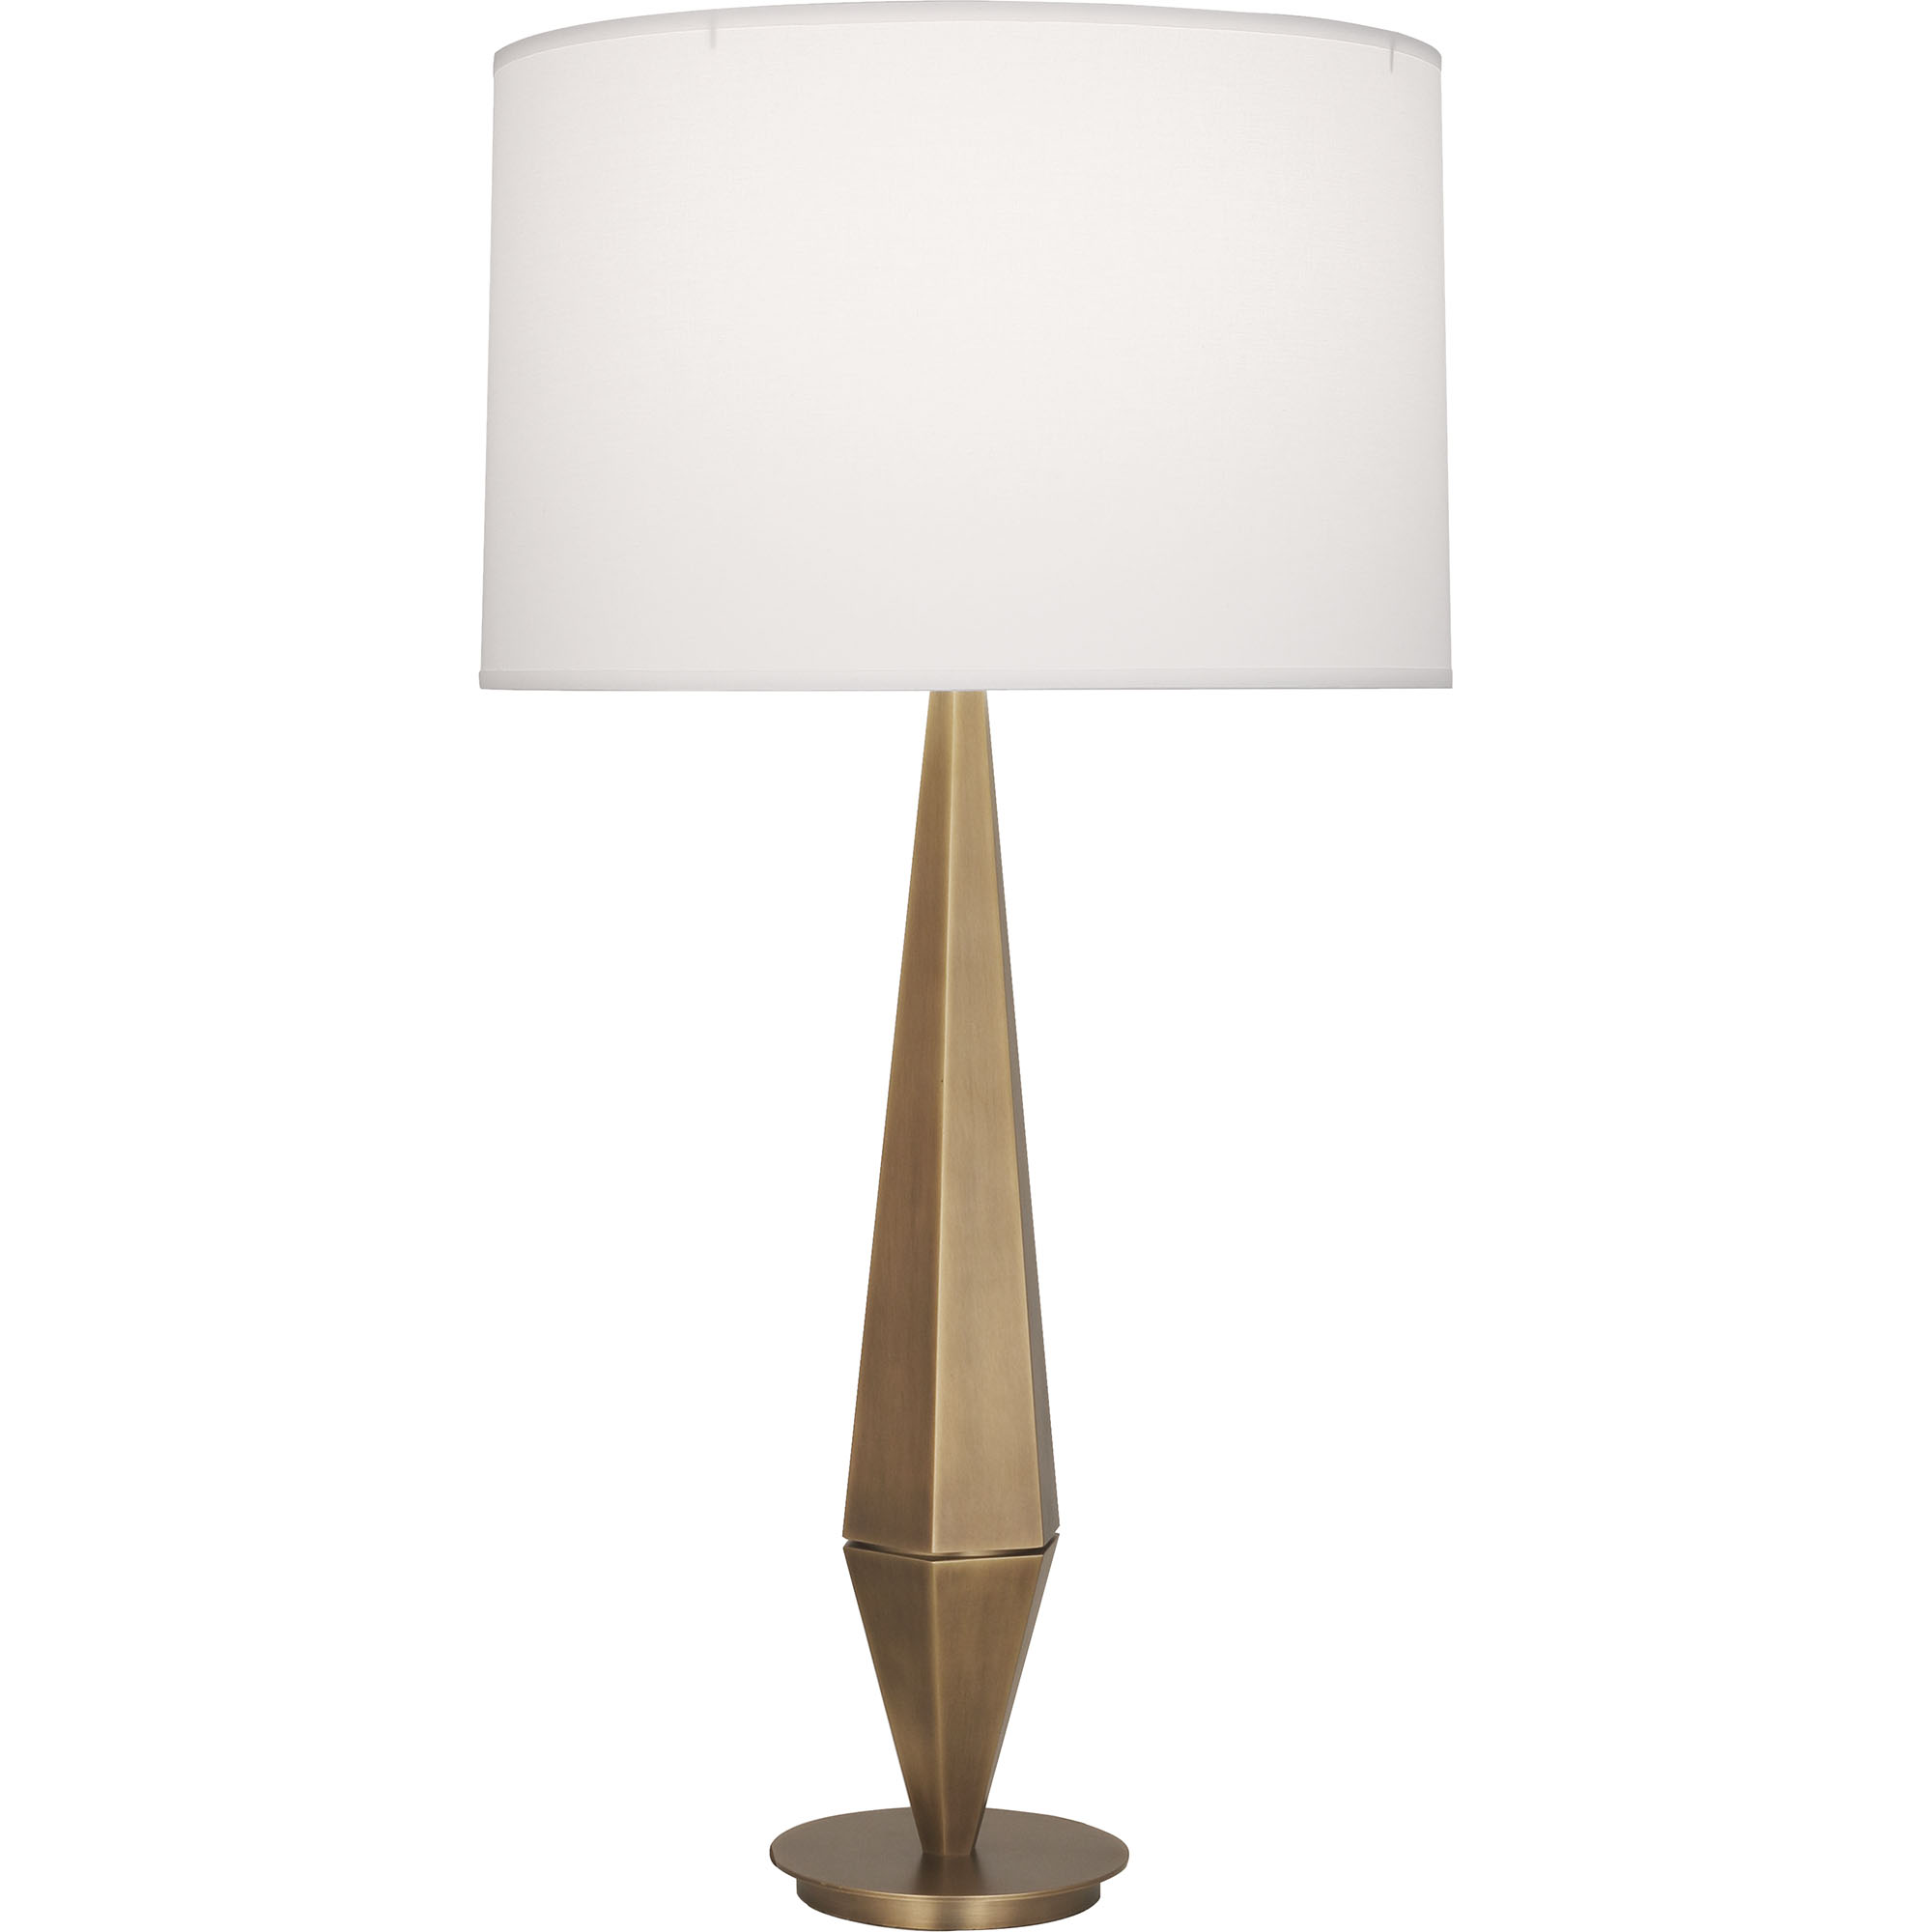 Wheatley Table Lamp Style #253